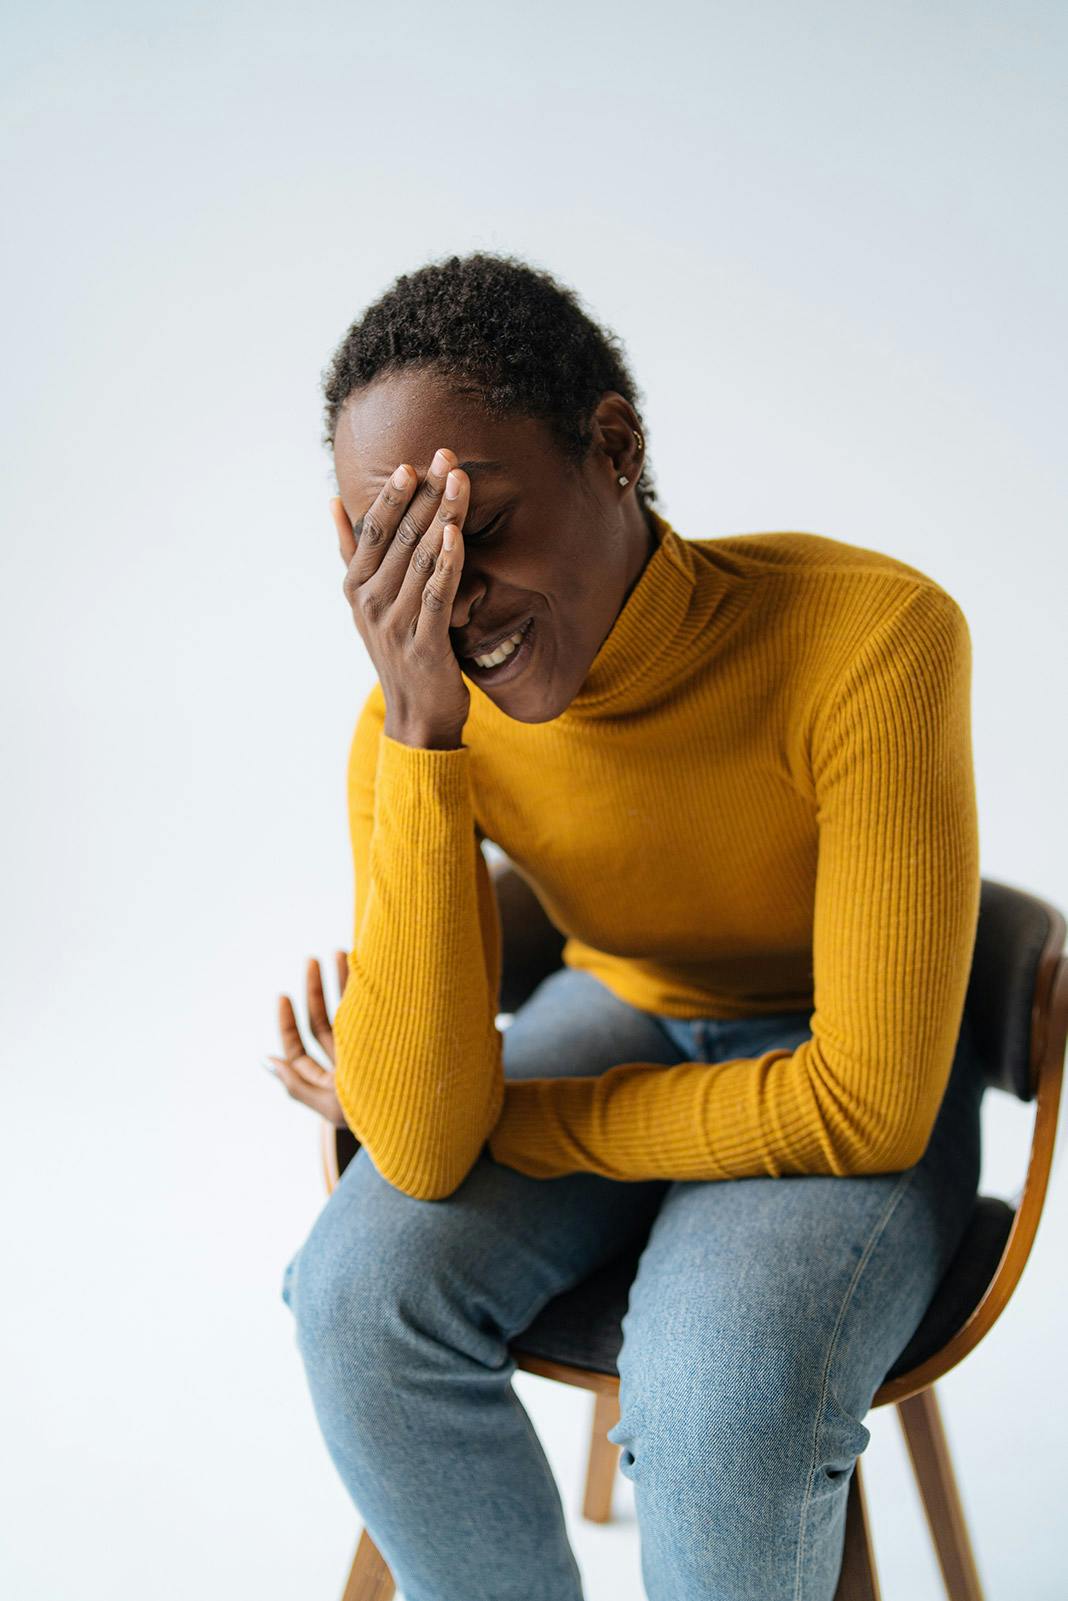 Una joven afroamericana con cabello corto y rizado se cubre la cabeza y los ojos con una mano, experimenta una migraña, sentada en una silla sobre un fondo blanco en el estudio. Mujer con cuello alto amarillo brillante y jeans azules